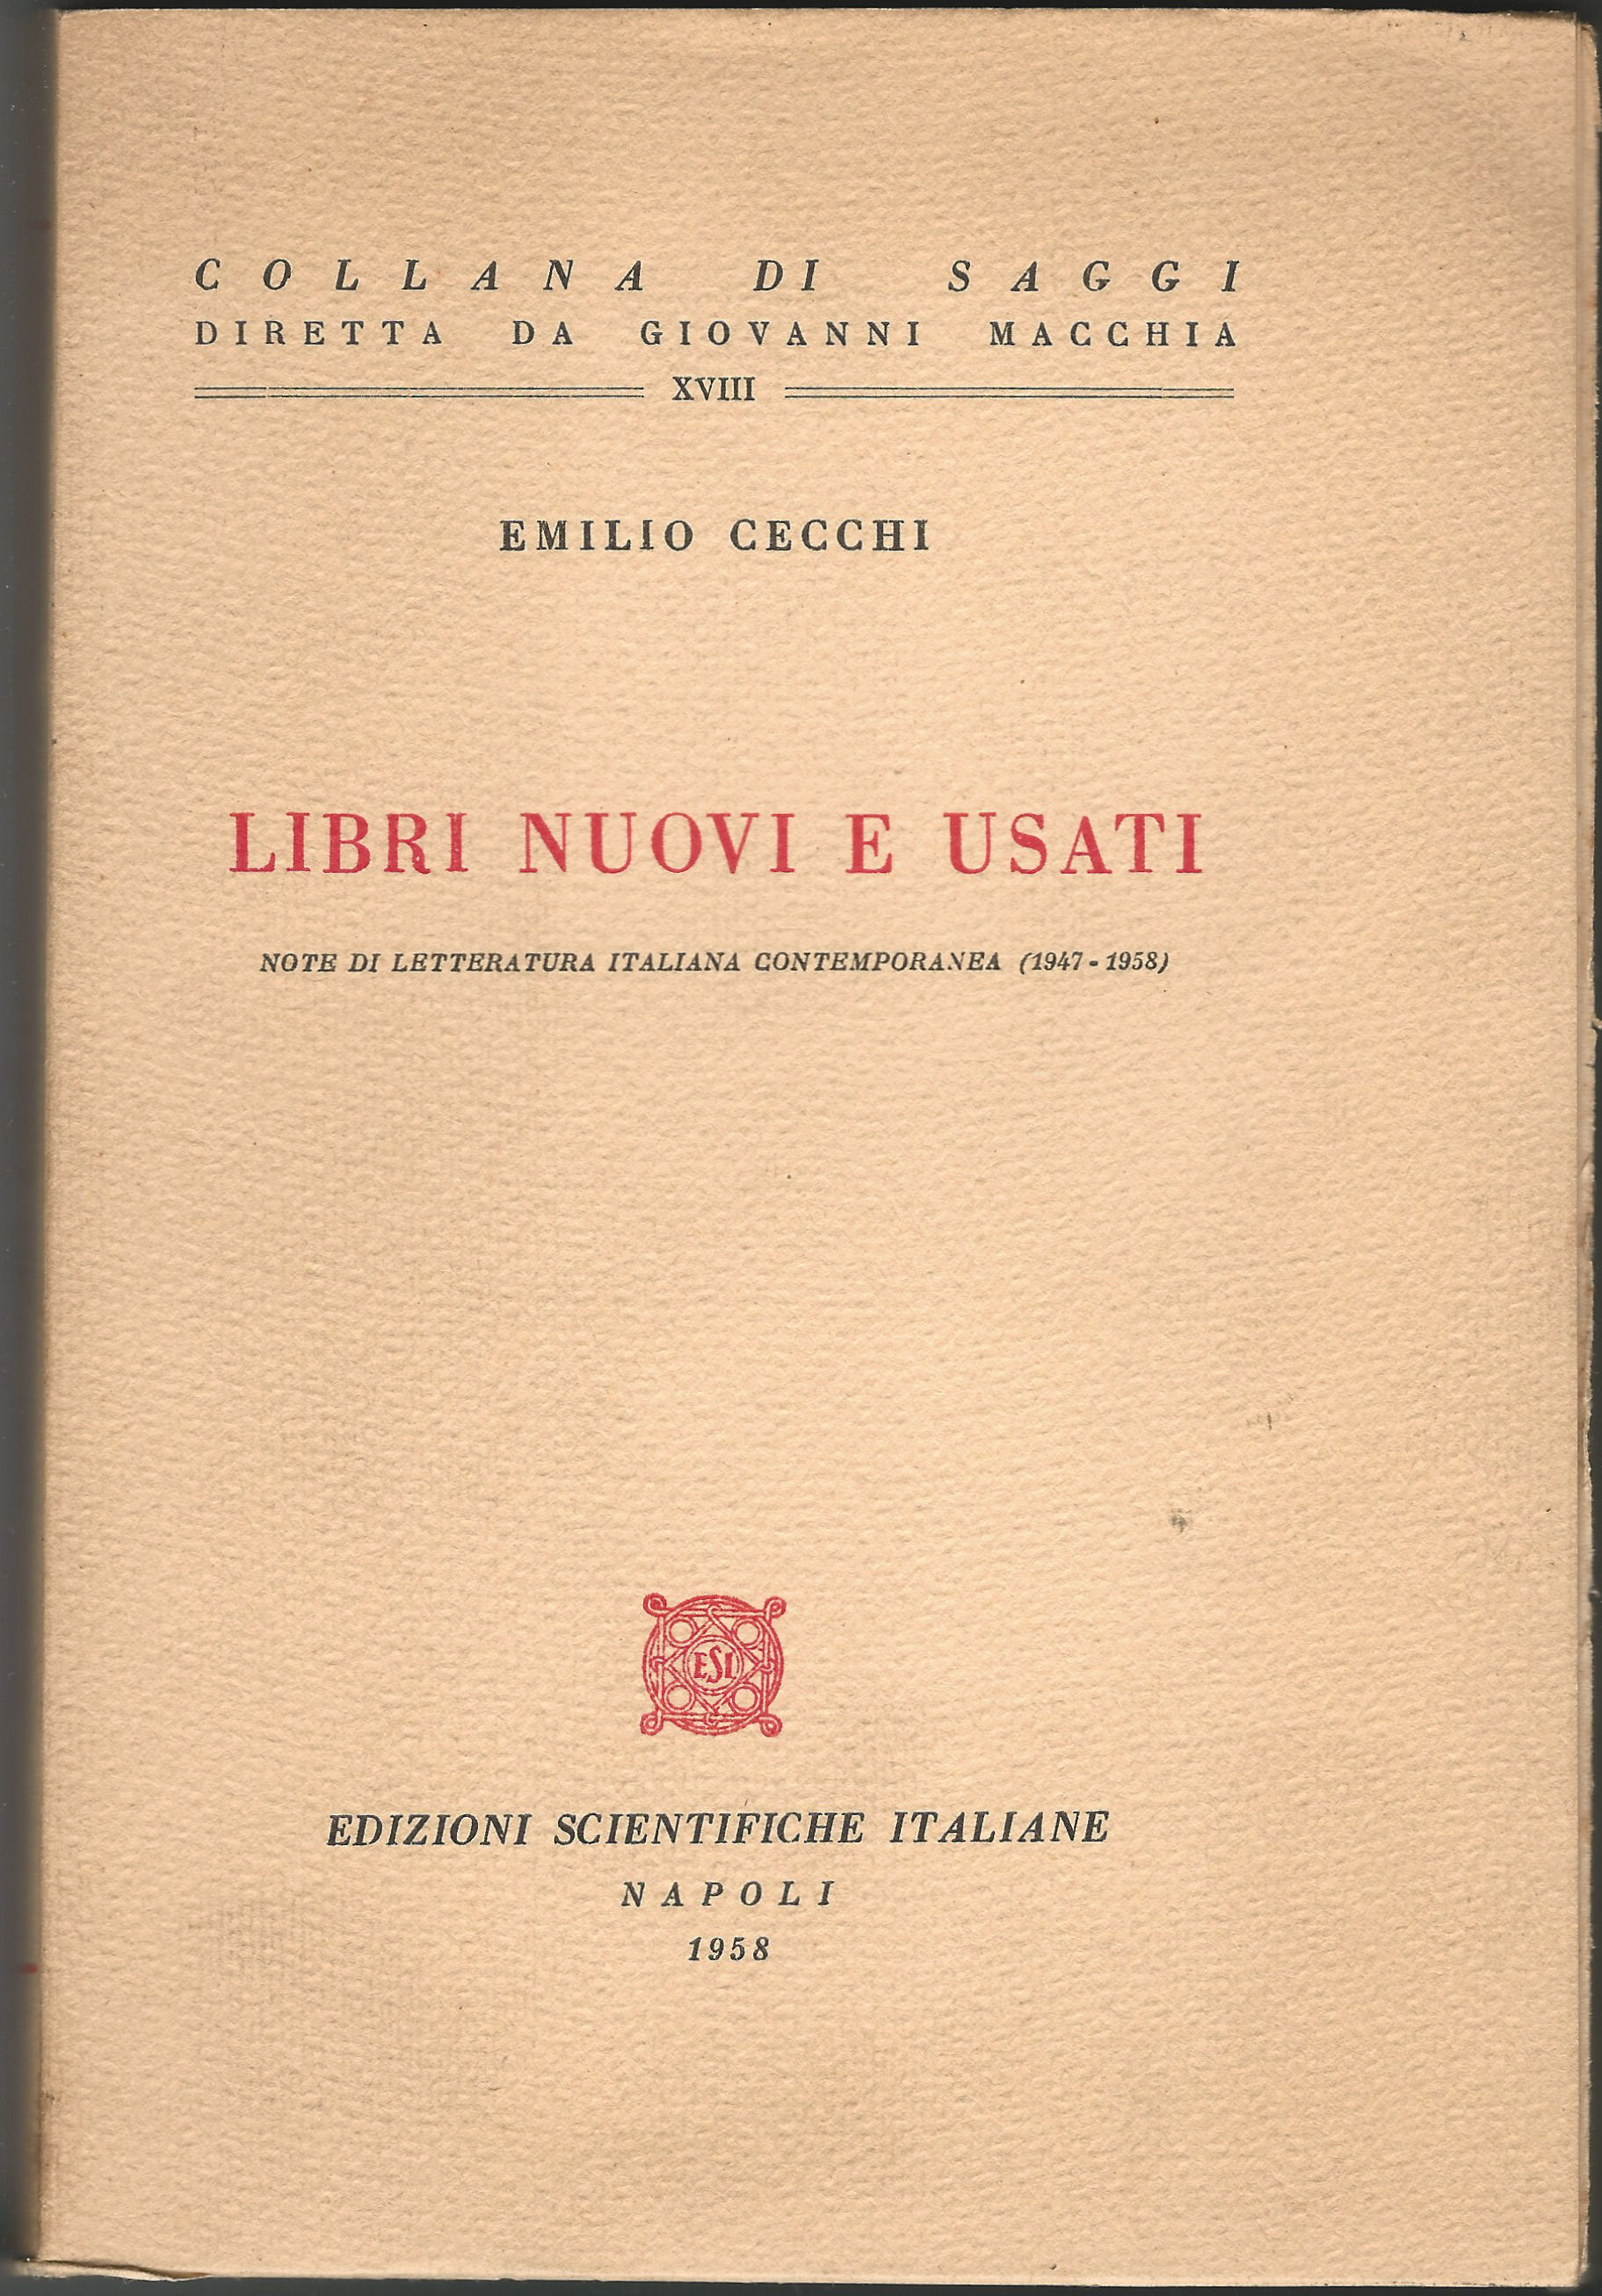 Libri nuovi e usati. Note di letteratura italiana contemporanea (1947-1958).